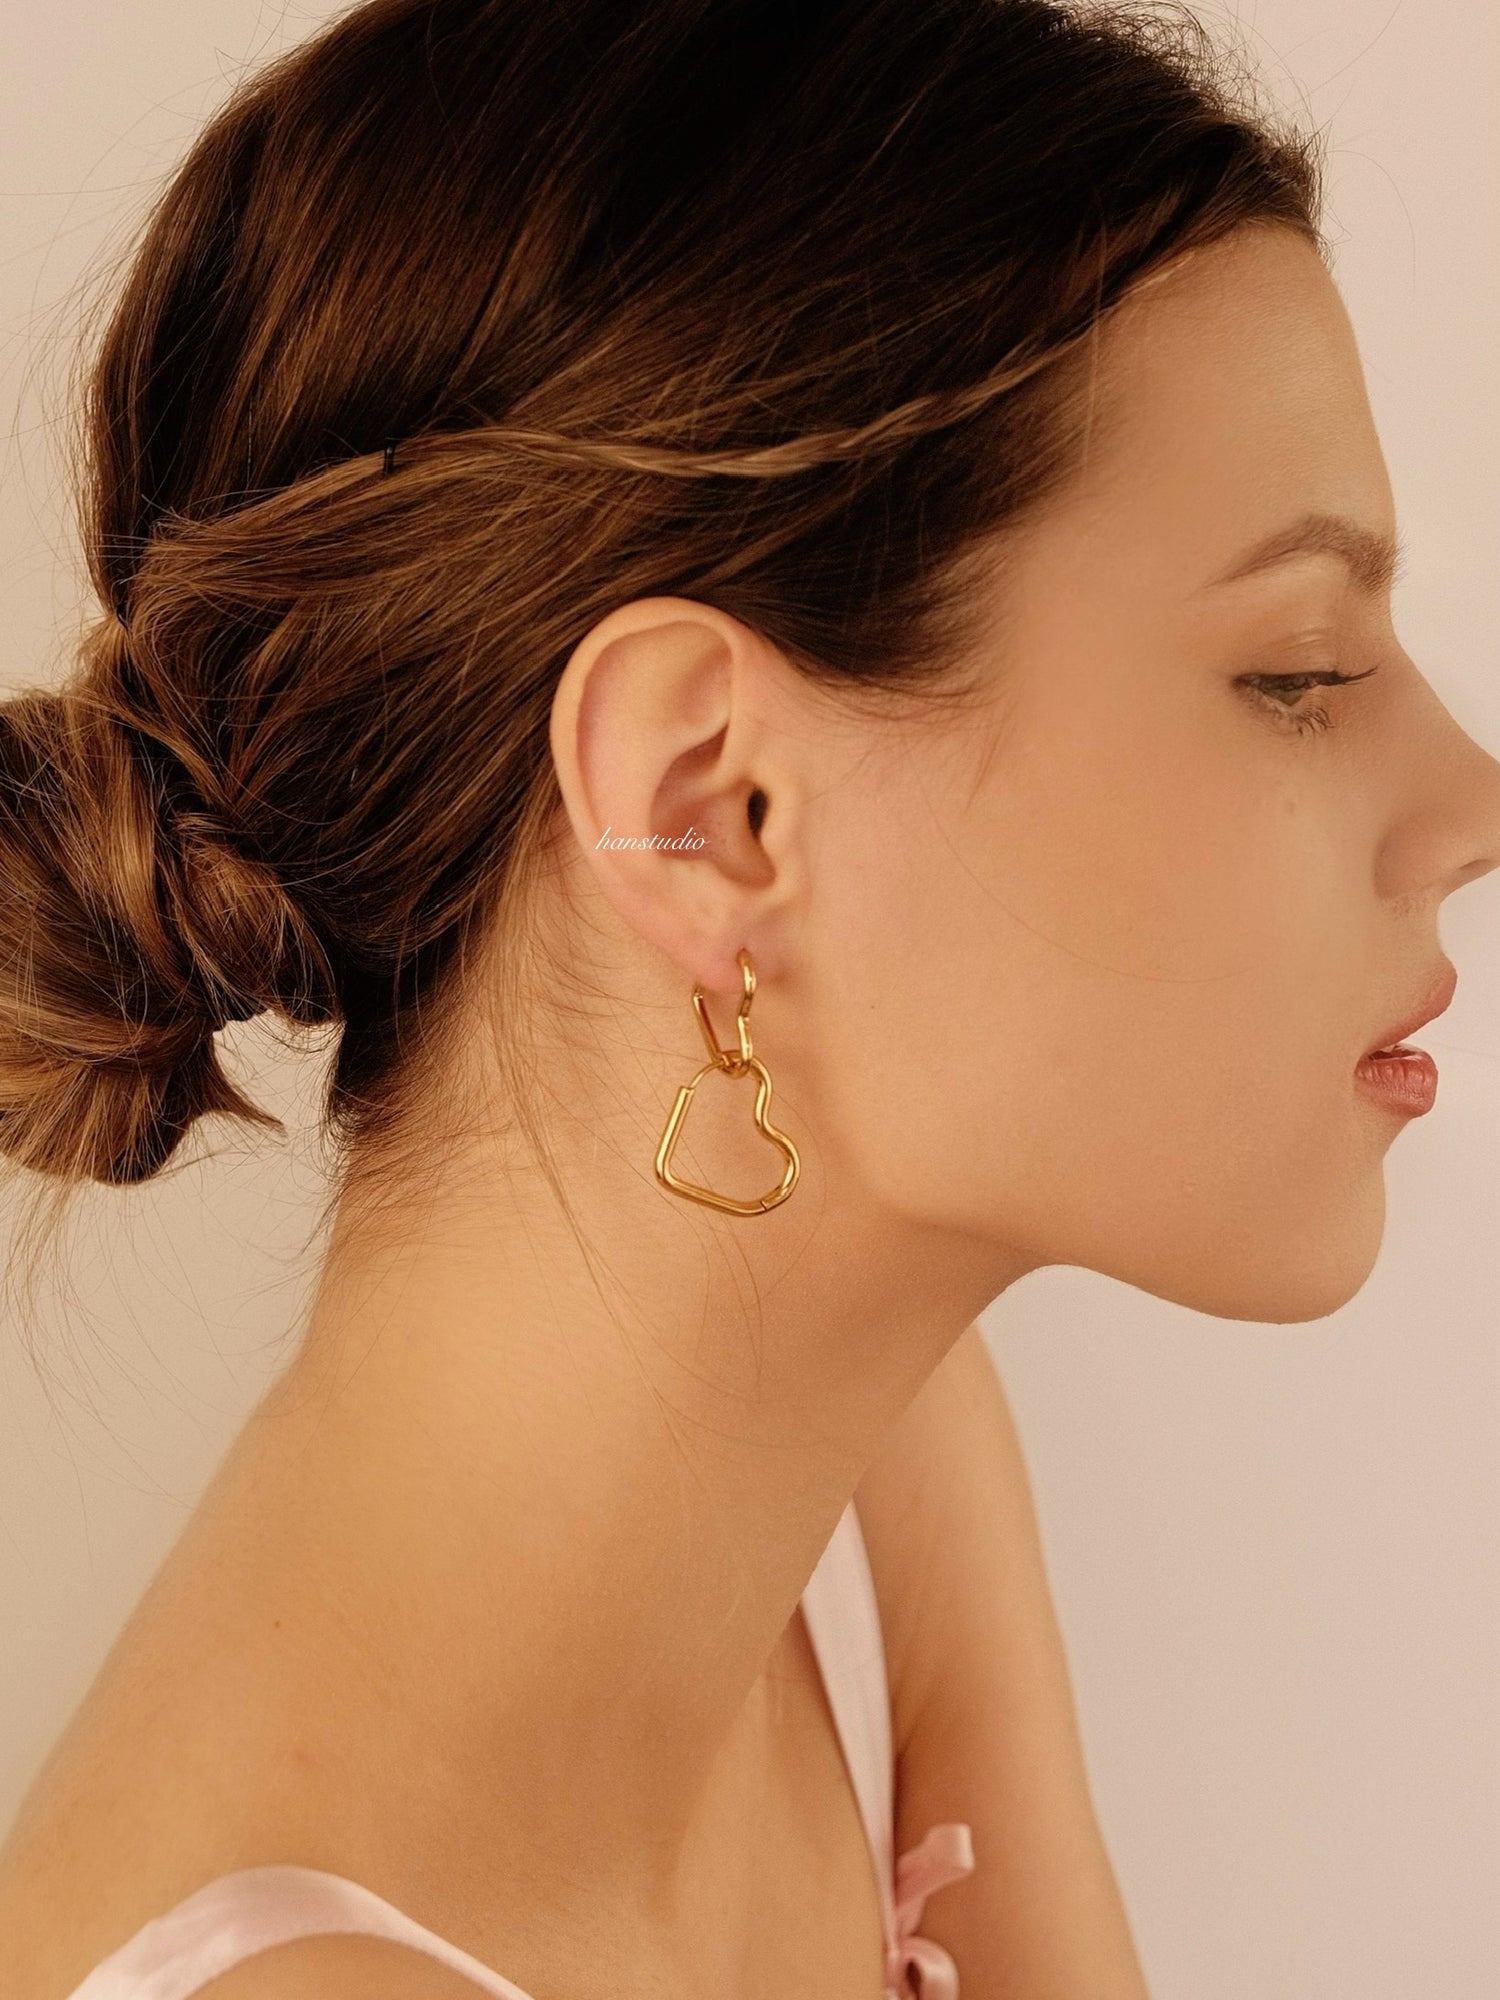 Shop - Earrings